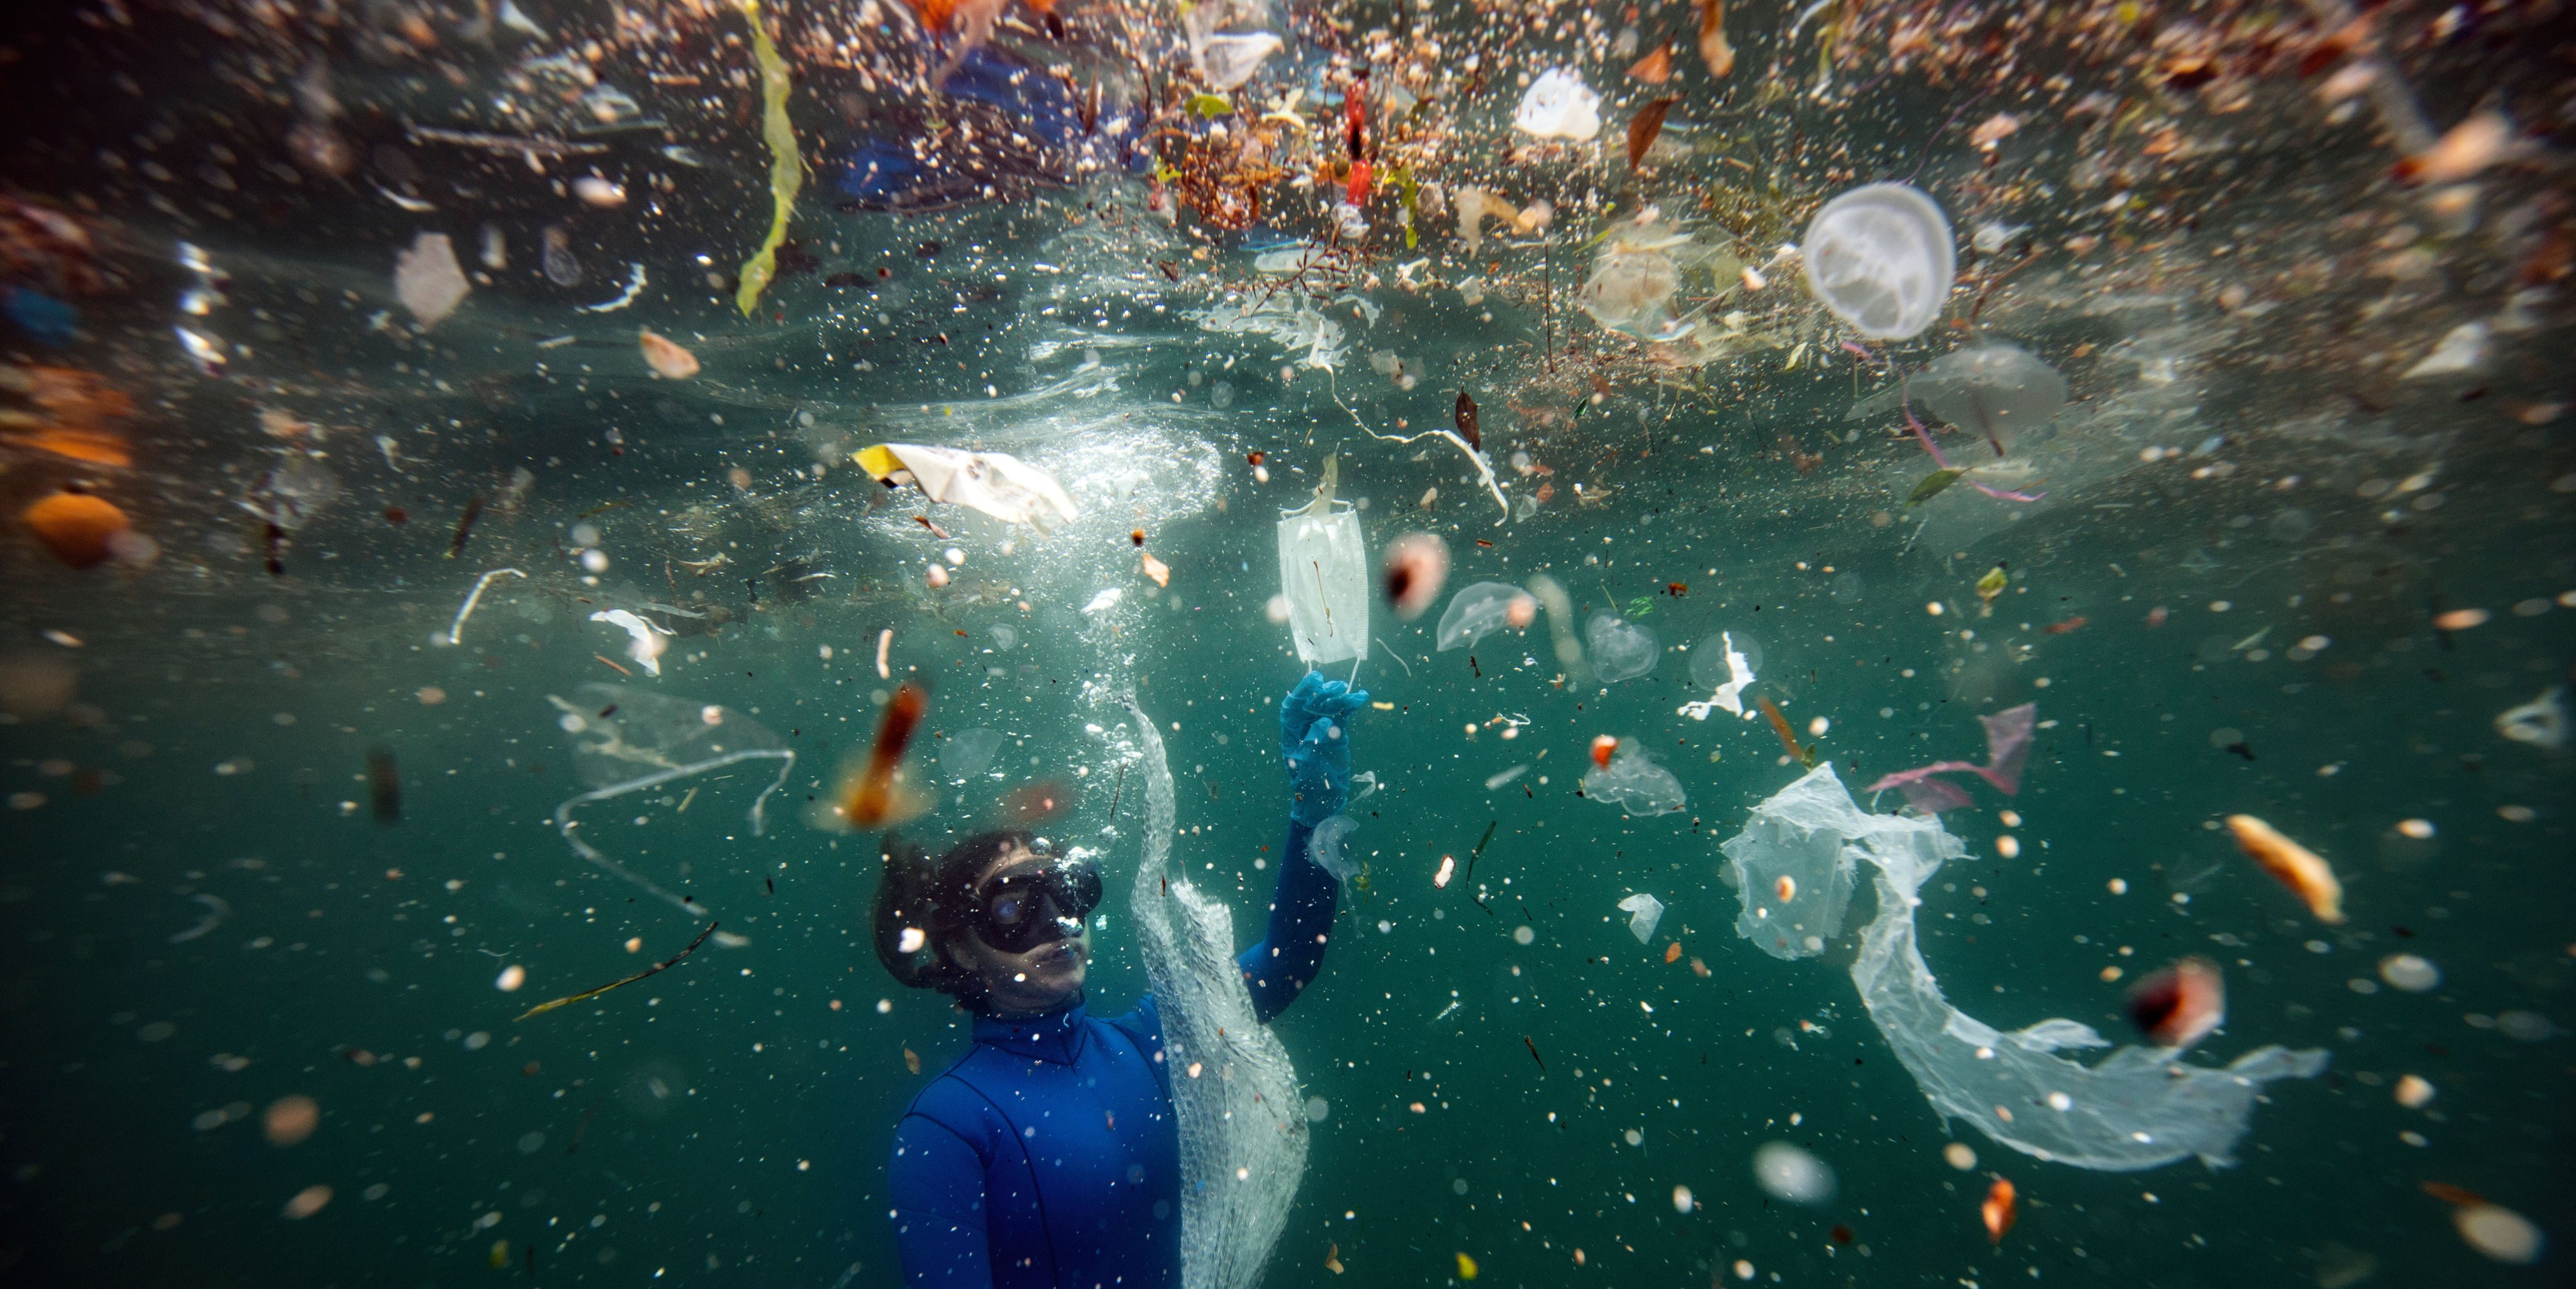 Os resíduos plásticos no oceano não estão só à superfície, mas também na coluna de água e até depositados no fundo do mar